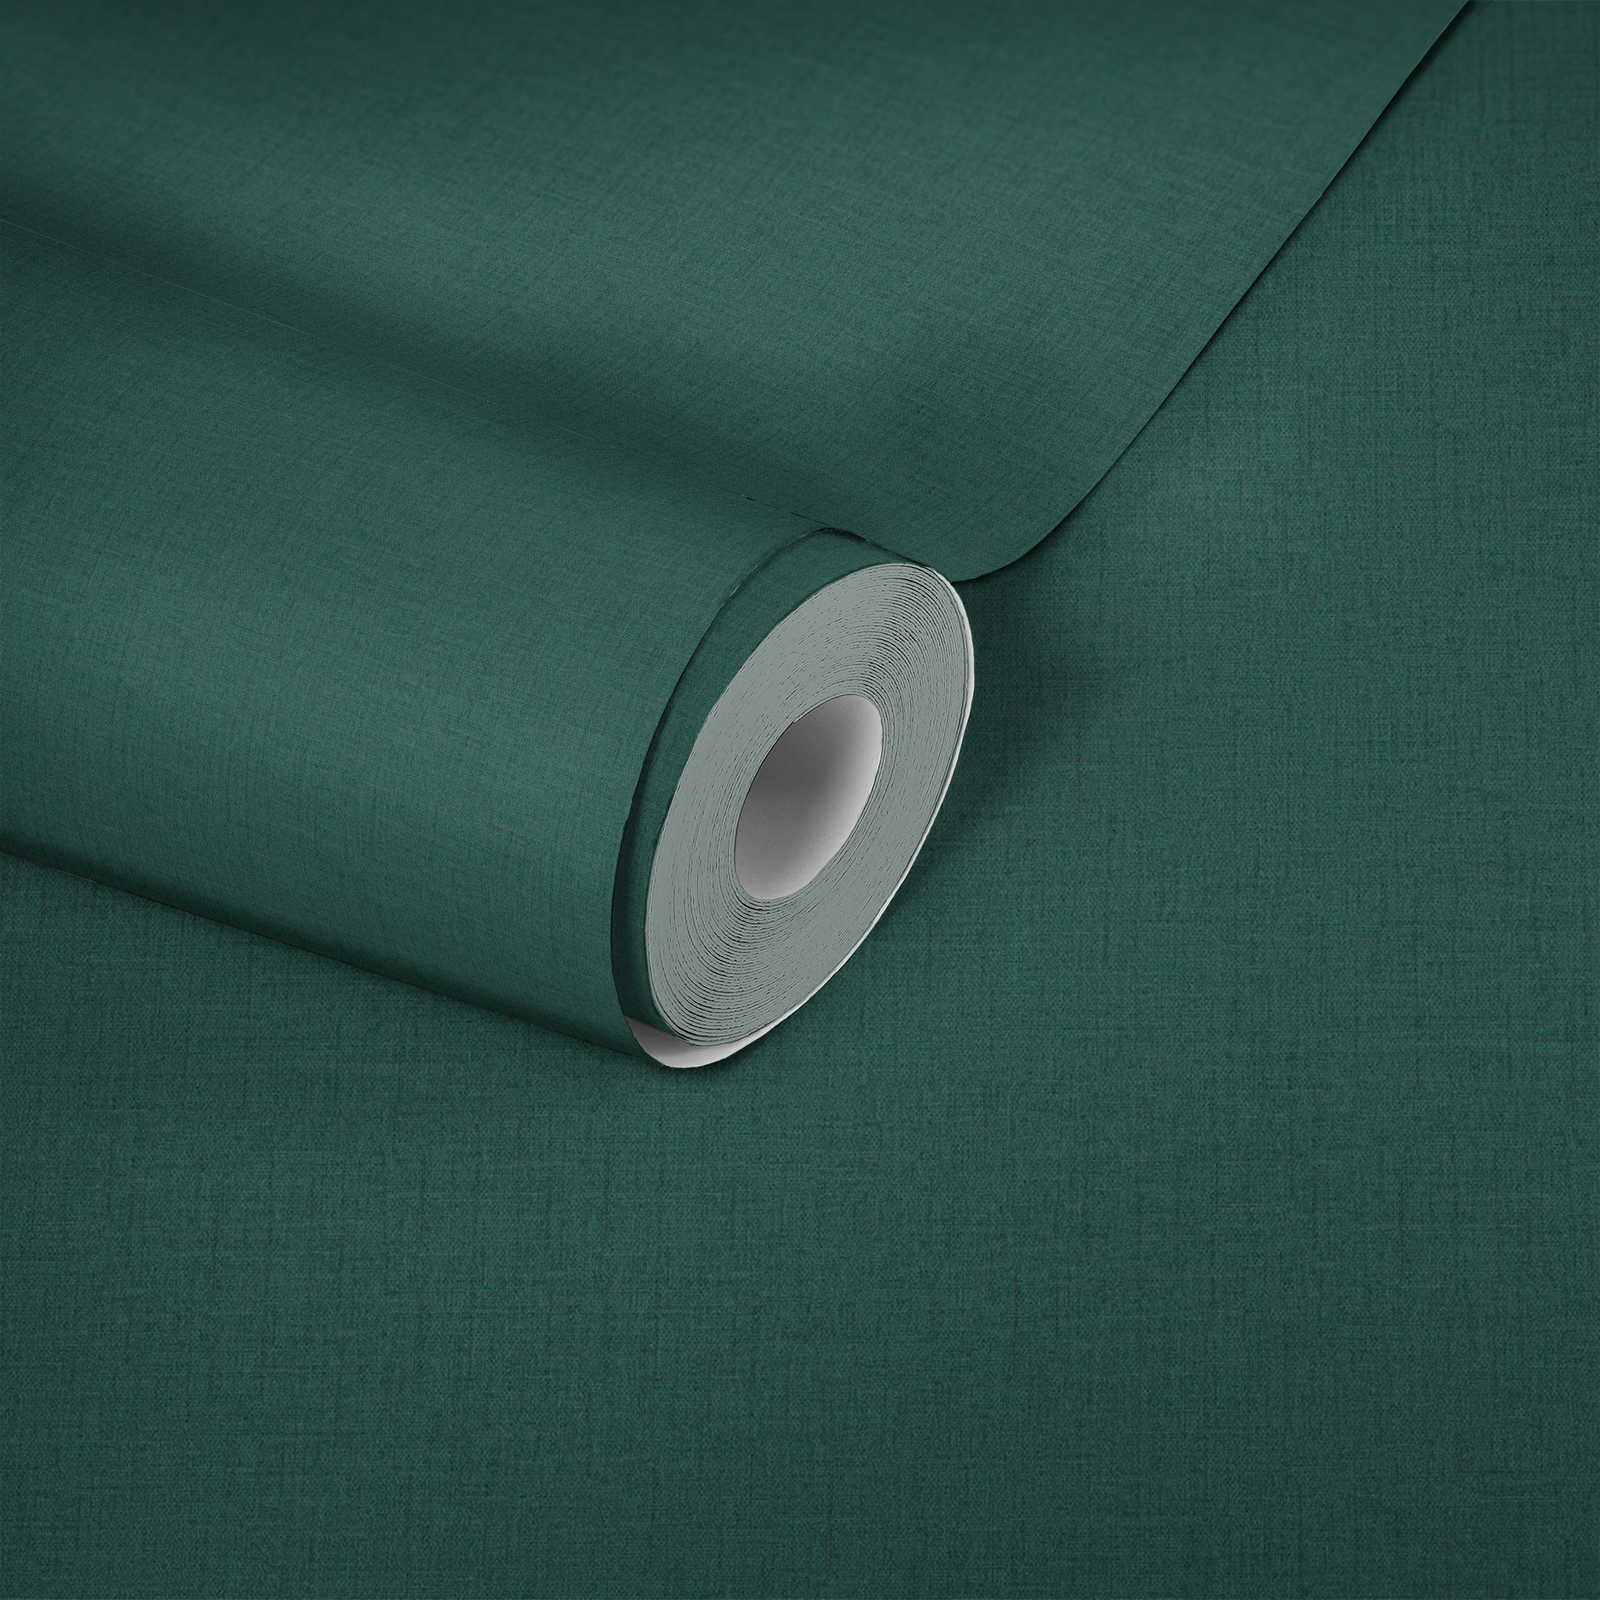             Groen vliesbehang met textielstructuur - groen
        